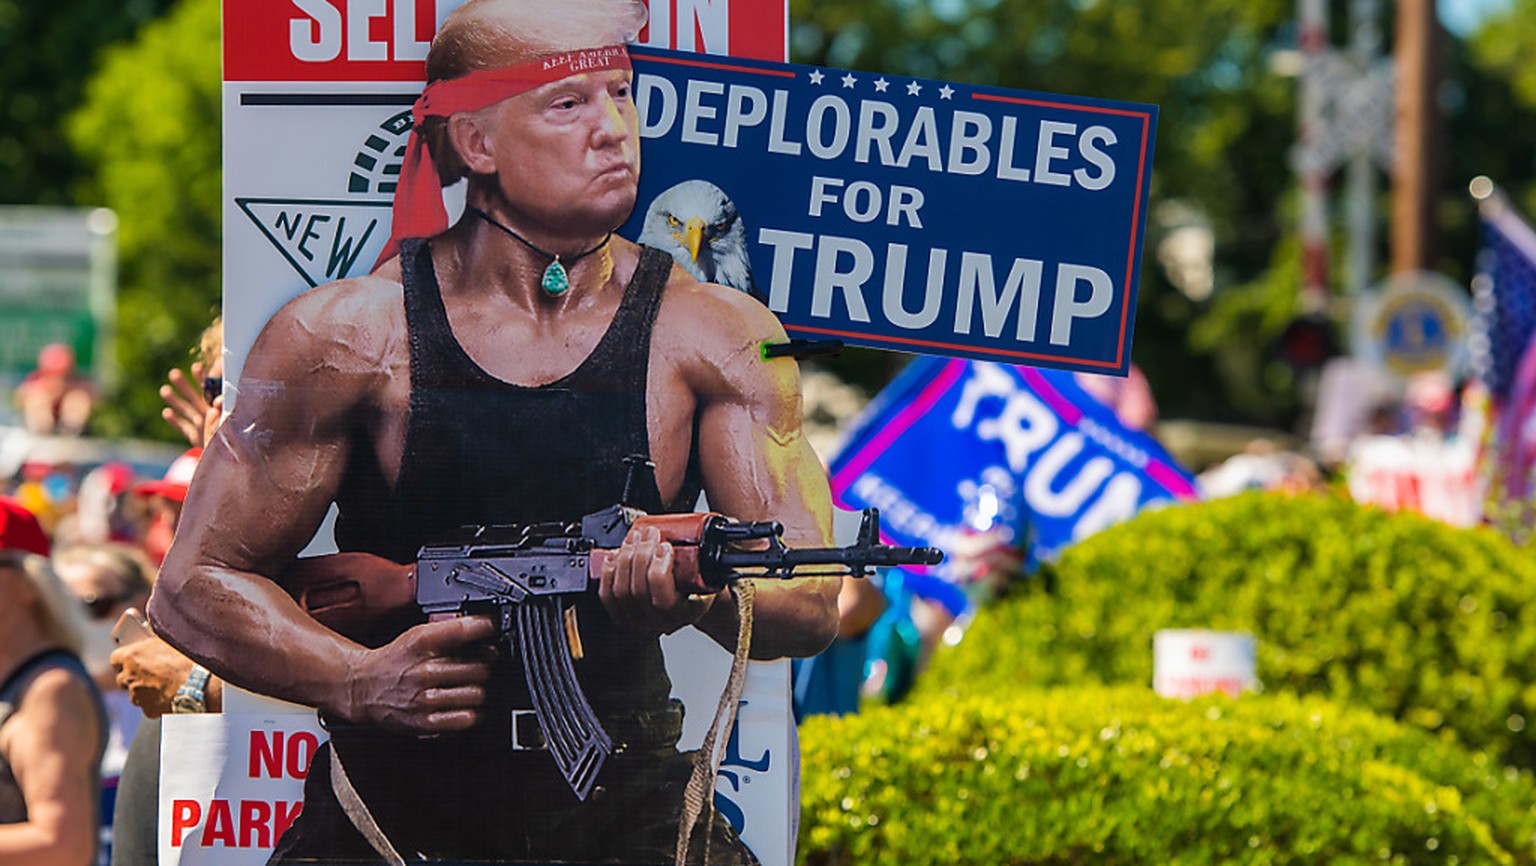 Eine Pappfigur der Filmfigur &quot;Rambo&quot;, auf deren Kopf ein Bild des US-Präsidenten Trump geklebt wurde, steht am Ort eines Auftrittes des Präsidenten im Rahmen seines Wahlkampfes. Foto: Chris  ...